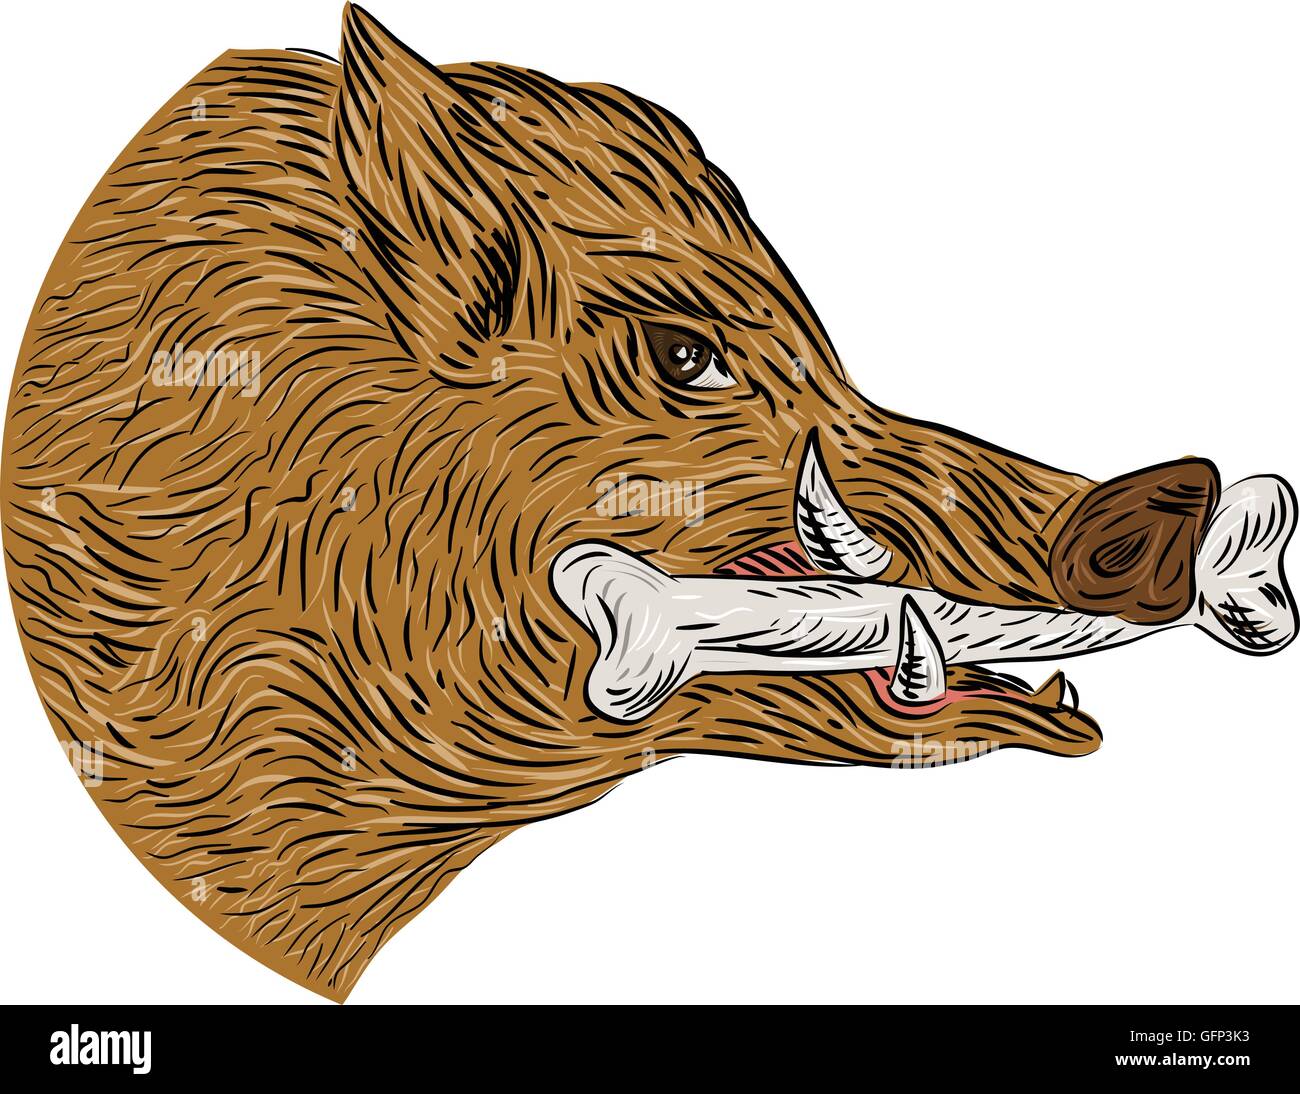 Style croquis dessin illustration d'un cochon sauvage sanglier razorback chef avec de l'os dans la bouche depuis le côté isolé sur fond blanc. Illustration de Vecteur